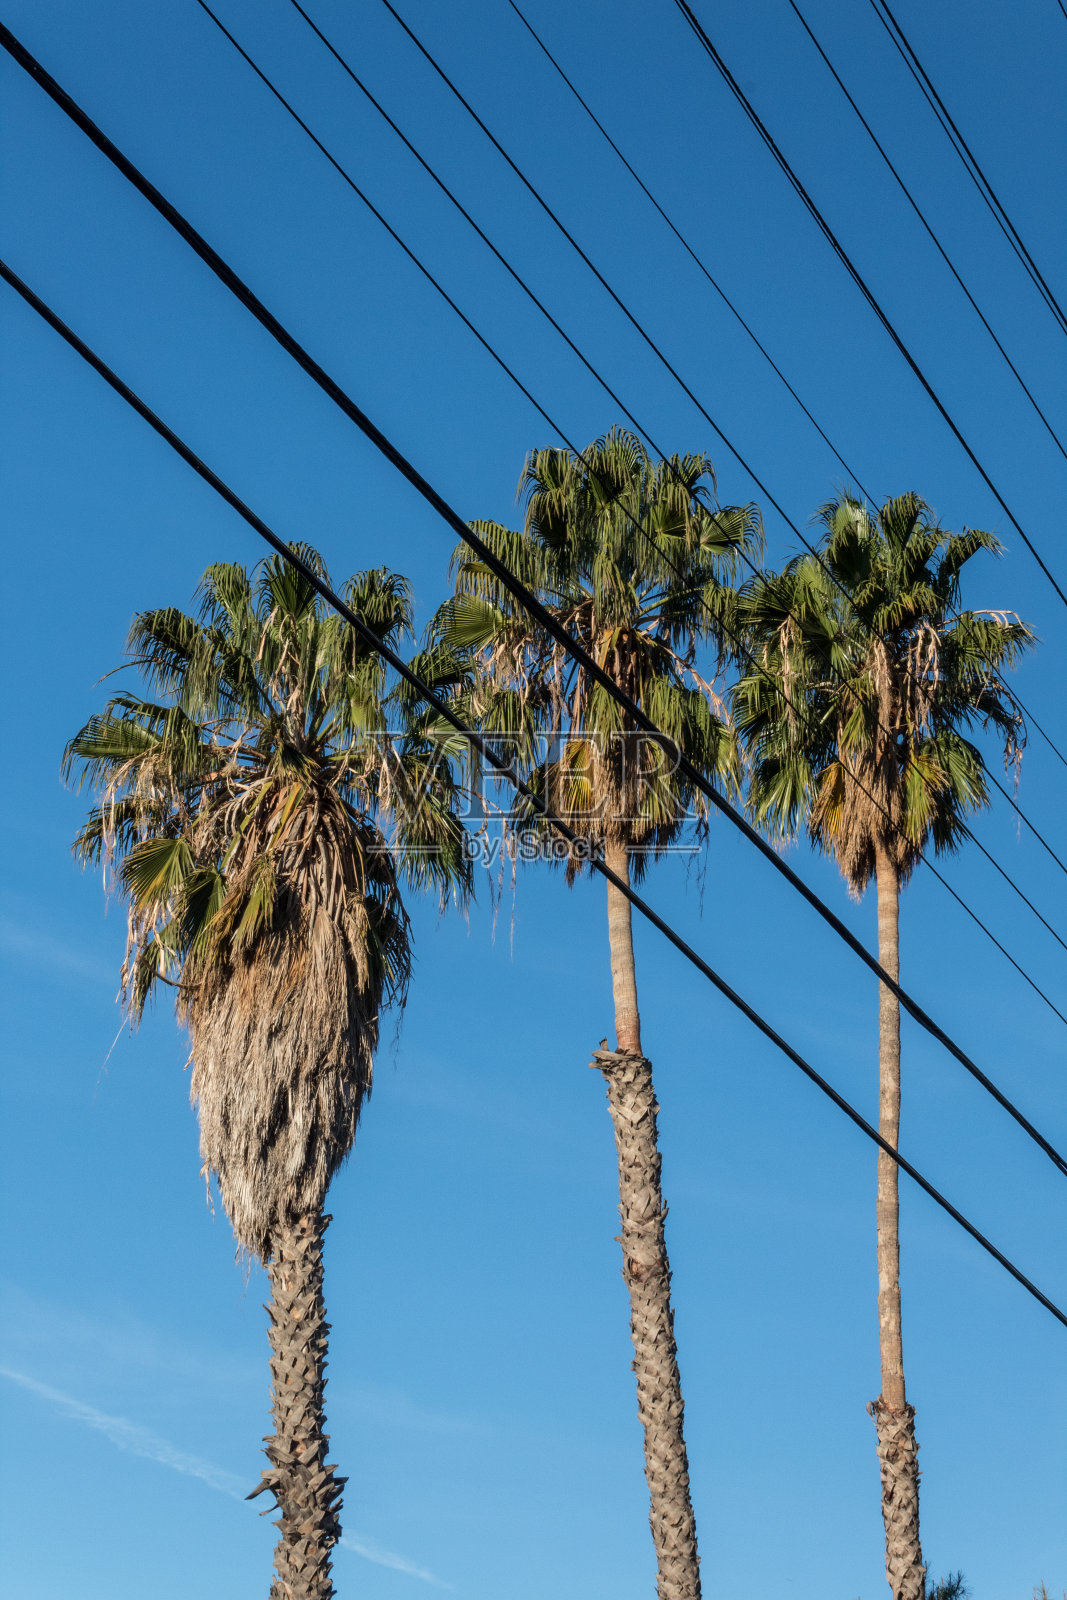 透过电线可以看到三棵华盛顿扇形棕榈树，湛蓝的天空照片摄影图片